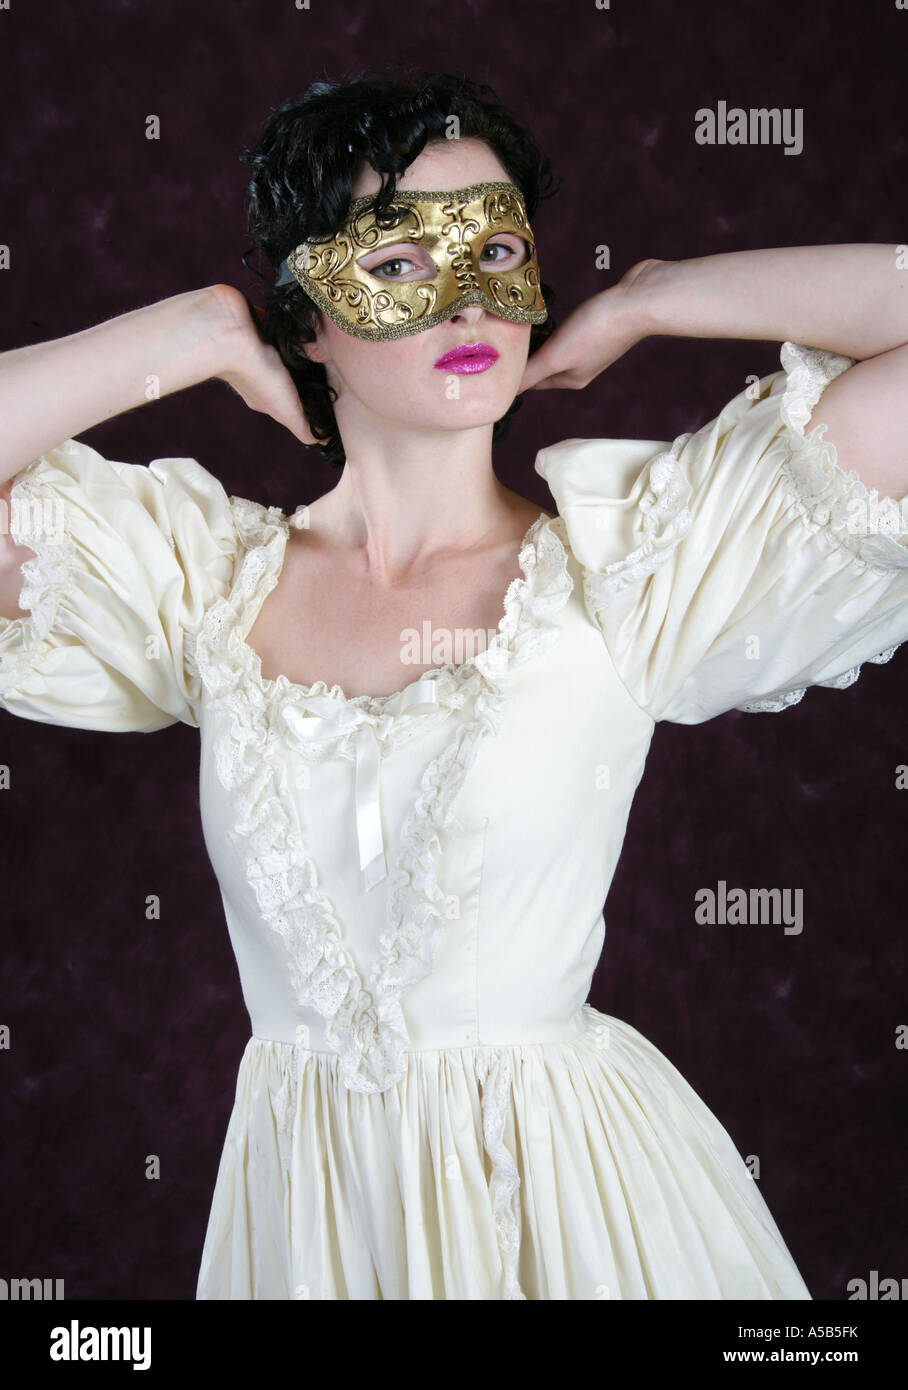 Porträt einer jungen Frau trug eine goldene Maske und einem cremefarbenen Kleid Stockfoto